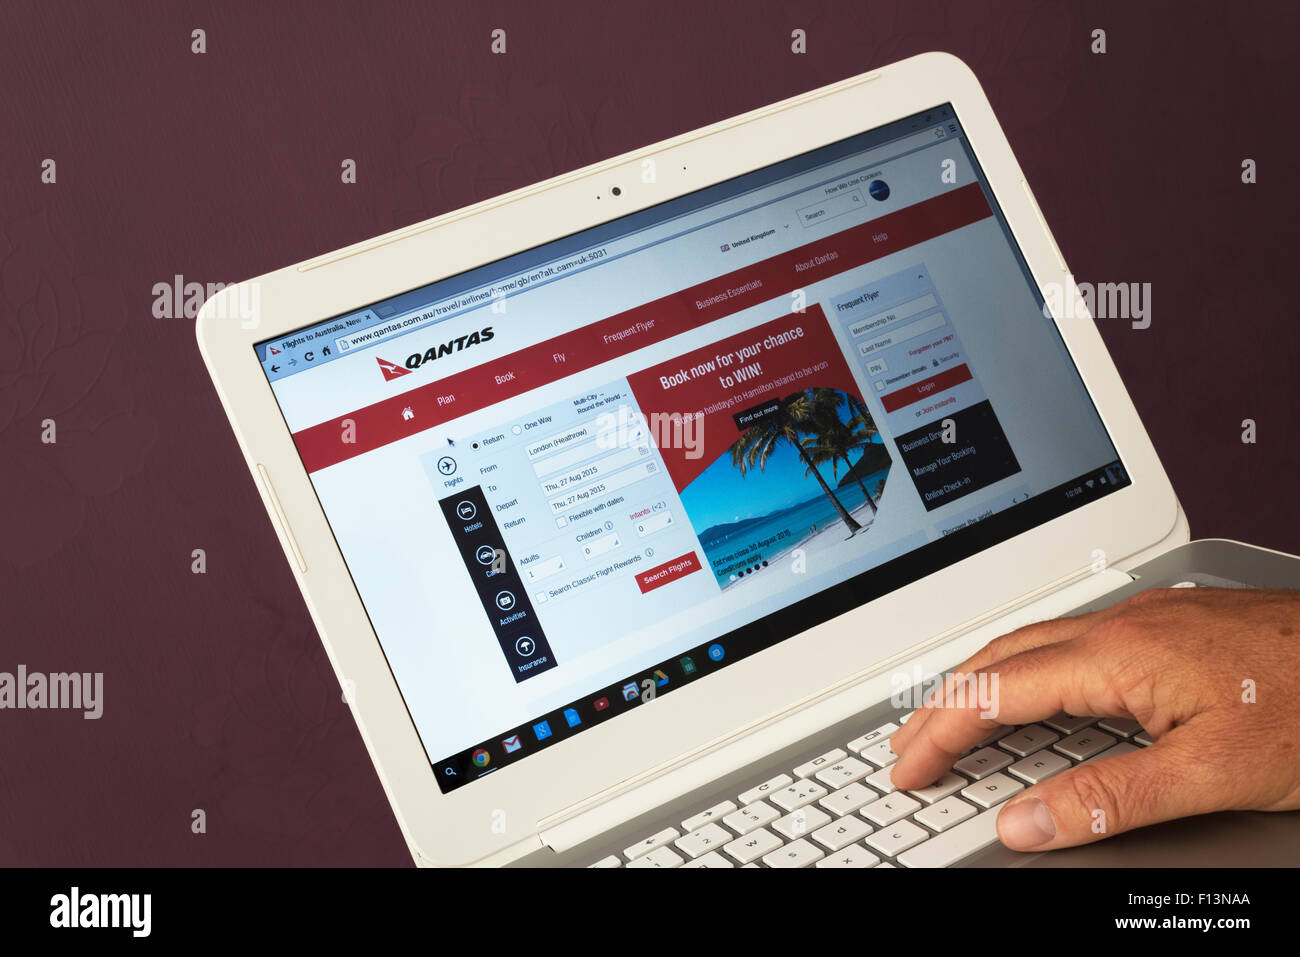 Sito web appartenenti a qantas essendo visualizzati su un computer portatile Foto Stock